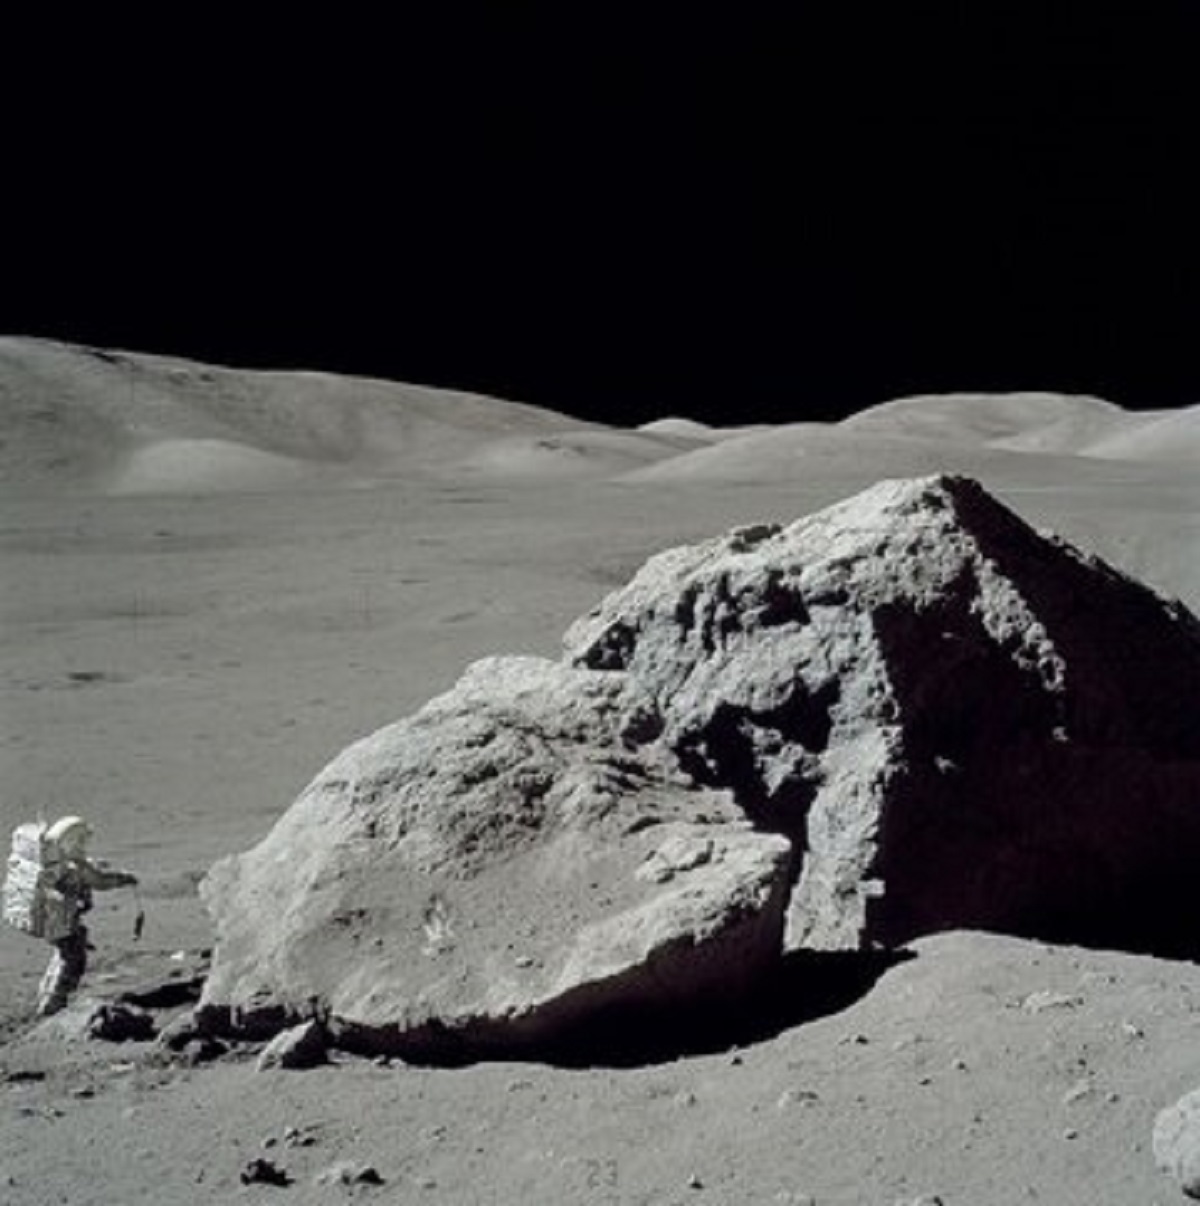 حرف ناسا را باور کنیم؟ انسان واقعا ۵۰ سال قبل به ماه رفته است؟